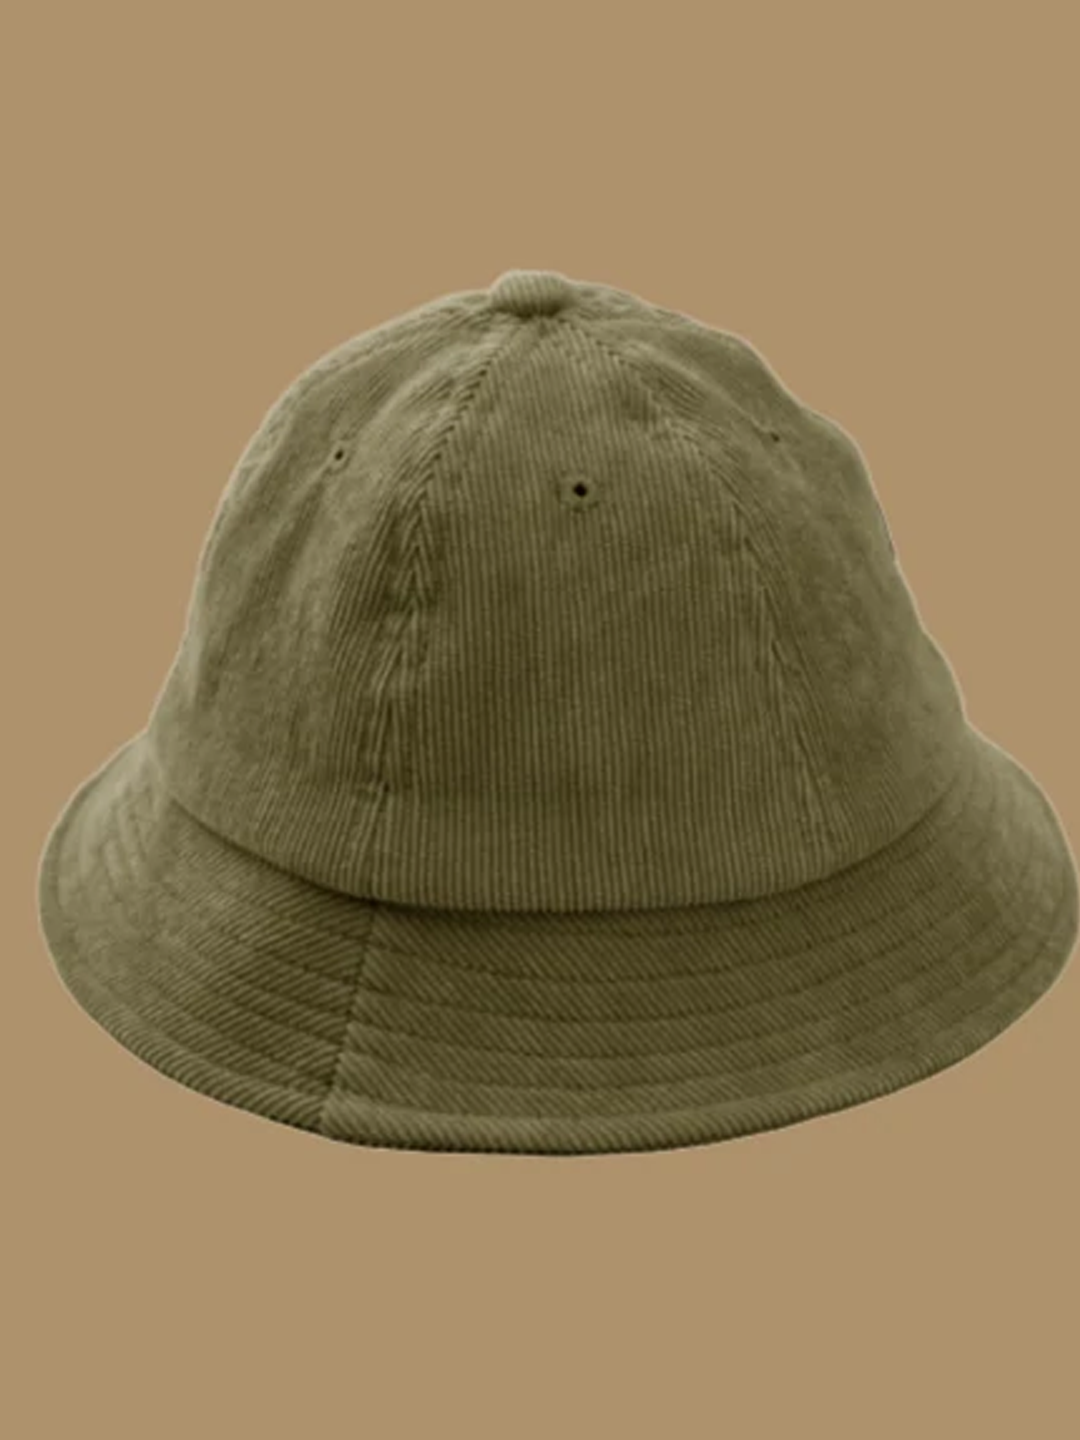 BabyMocs Sylvester Hat, BabyMocs laia servaga müts